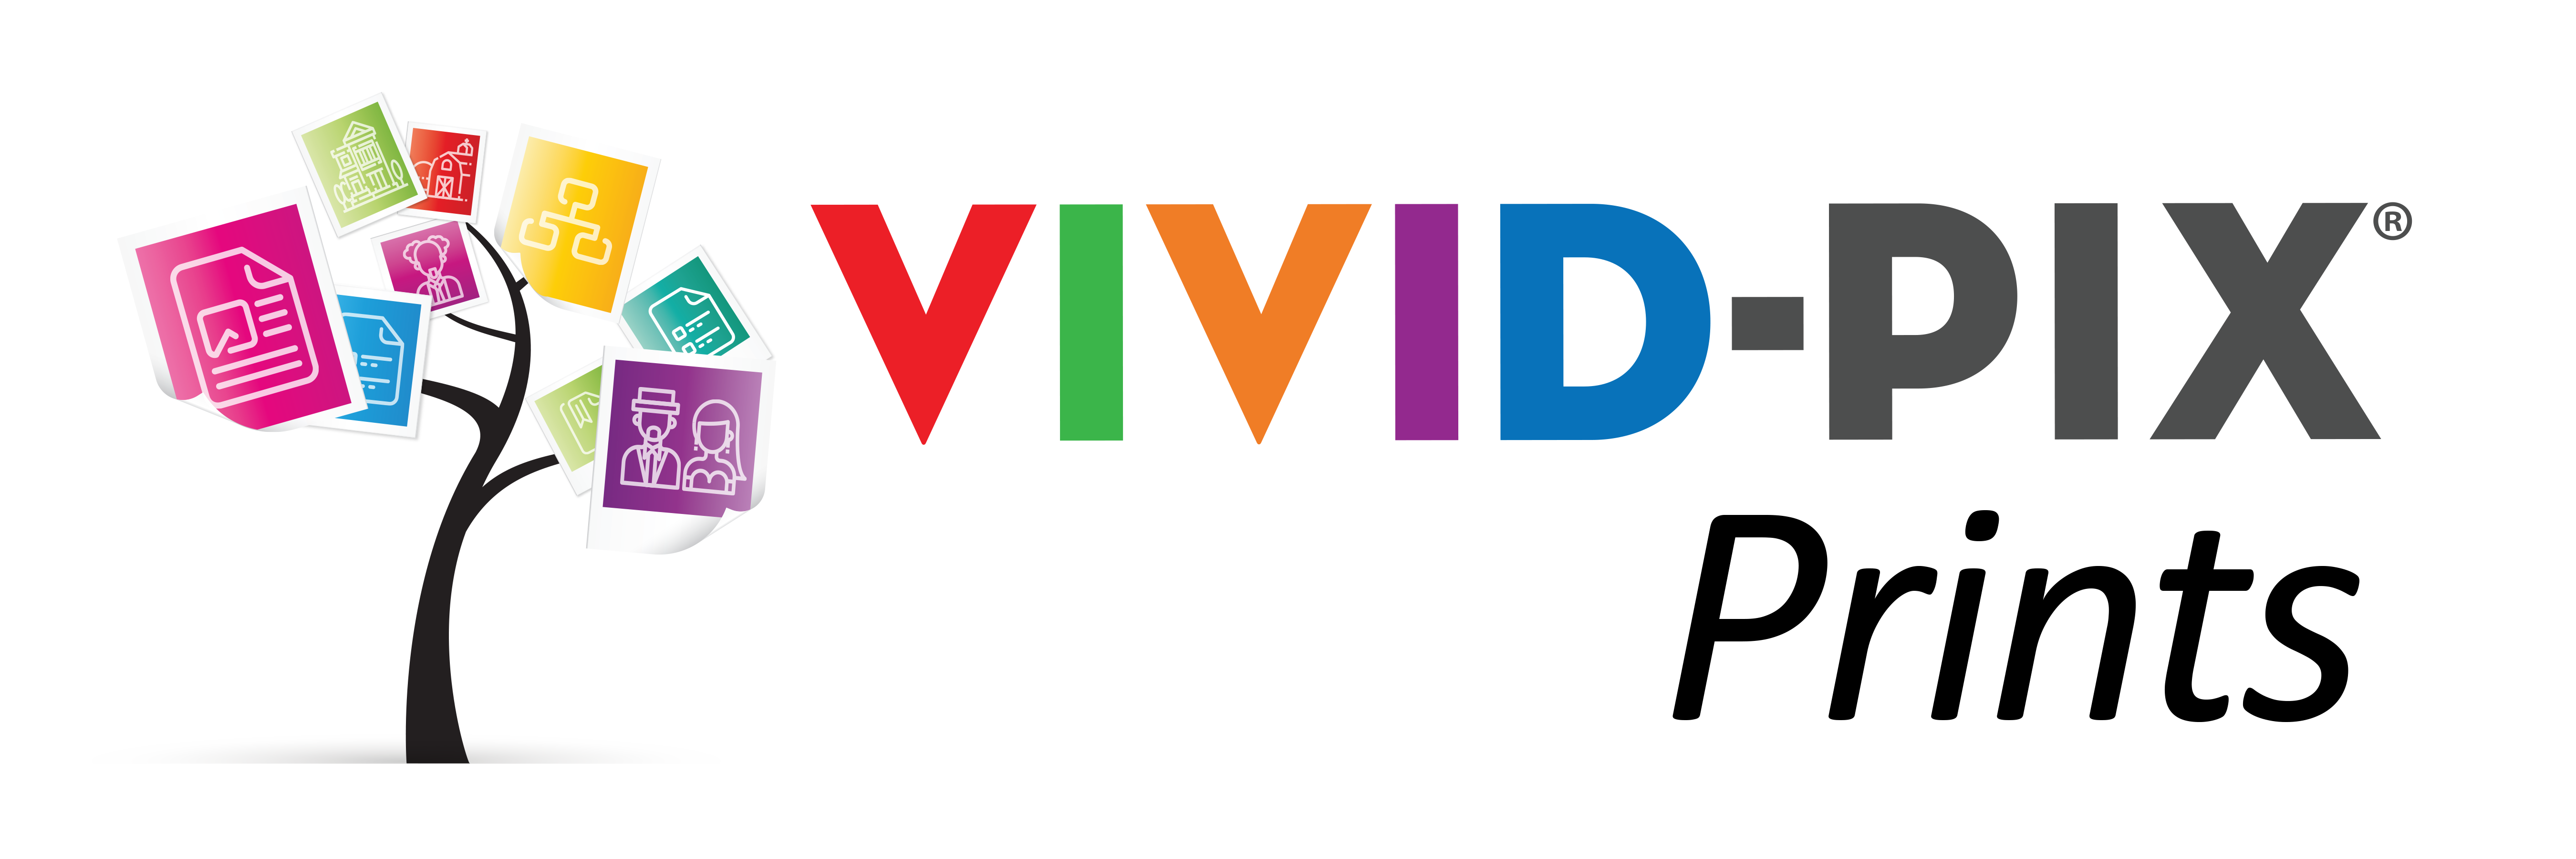 Vivid-Pix Prints Logo